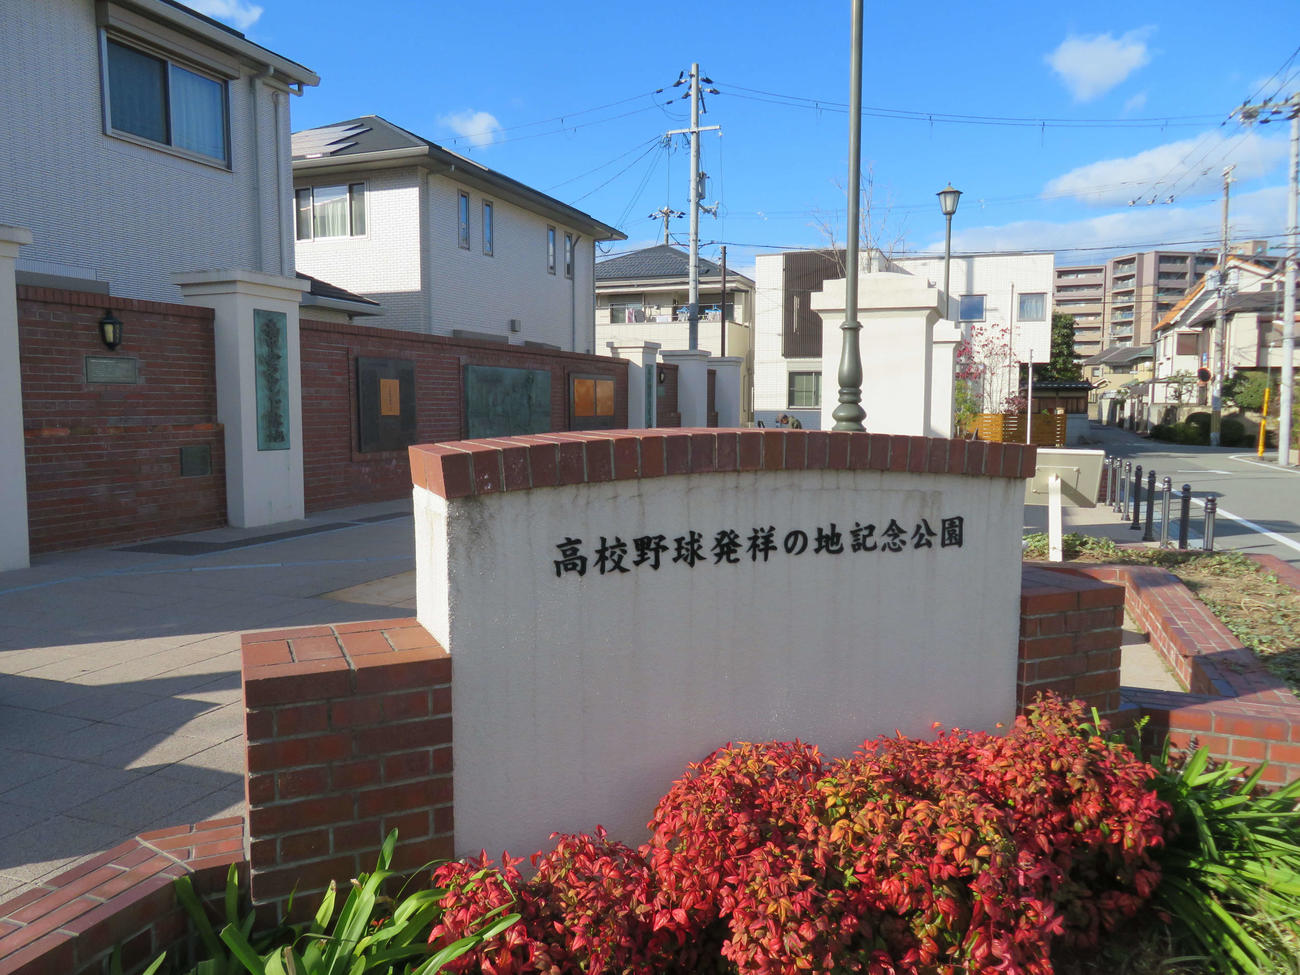 大阪・豊中市にある「高校野球発祥の地記念公園」。左奥に見えるのは「豊中グラウンド跡地」の石碑（撮影・磯綾乃）